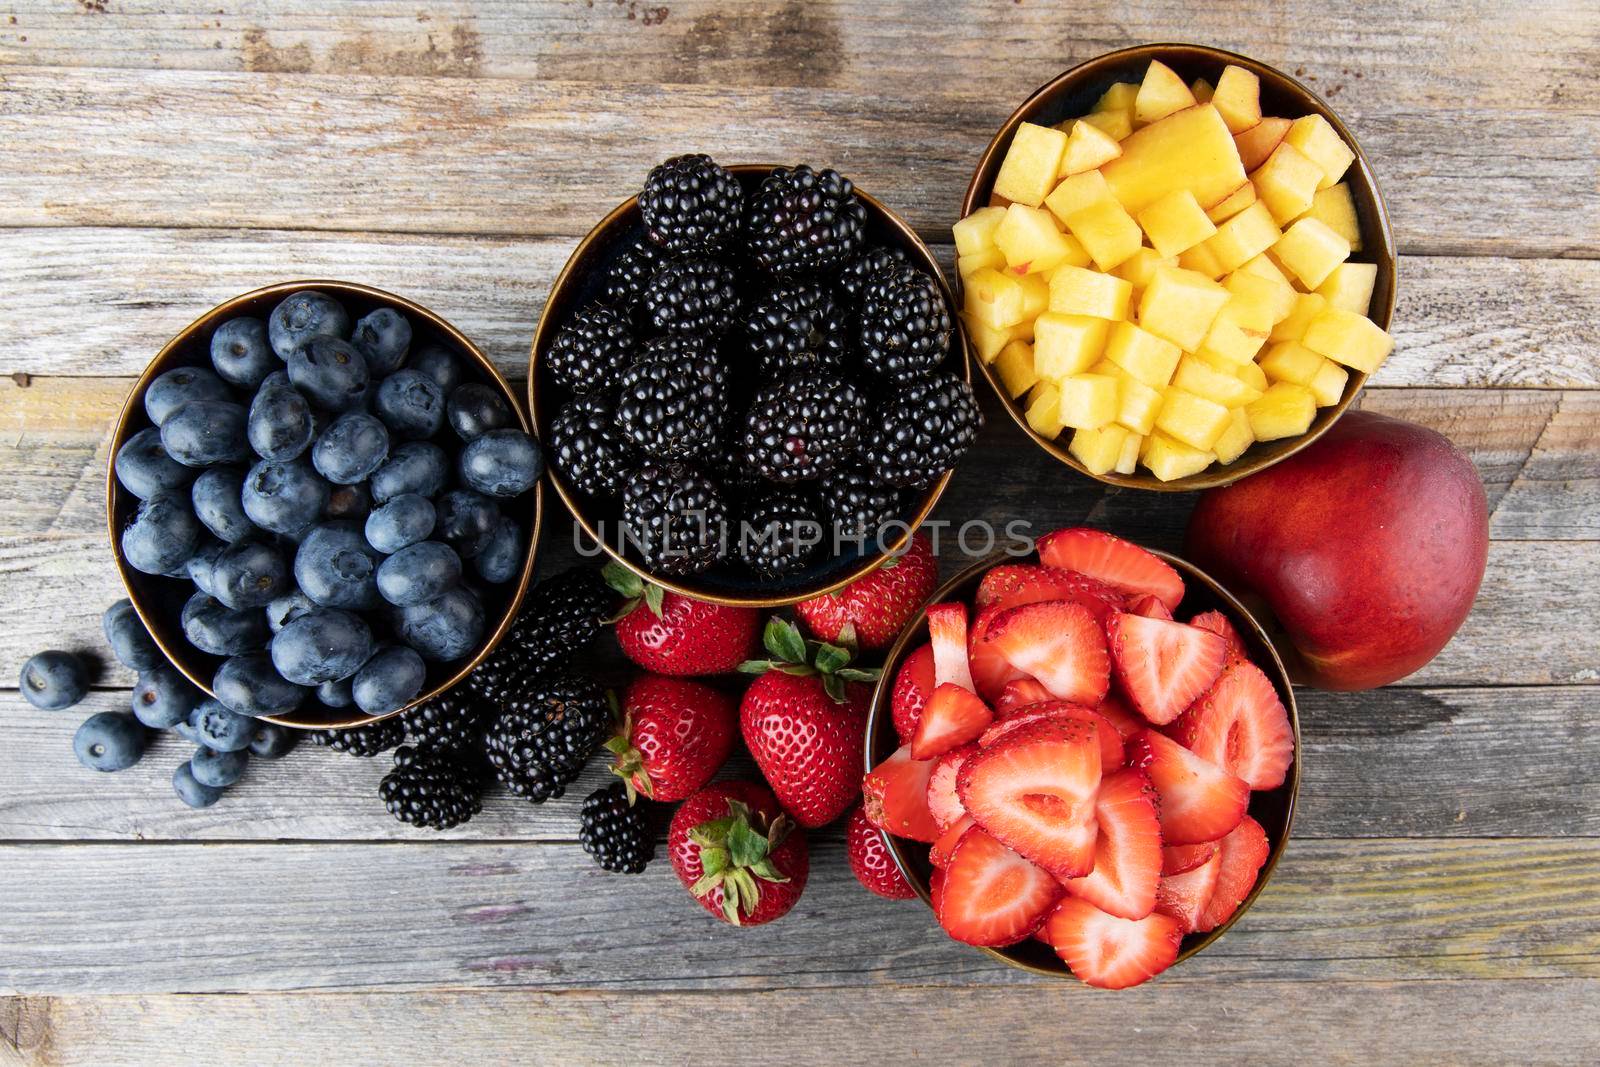 Bowls of Berries by charlotteLake